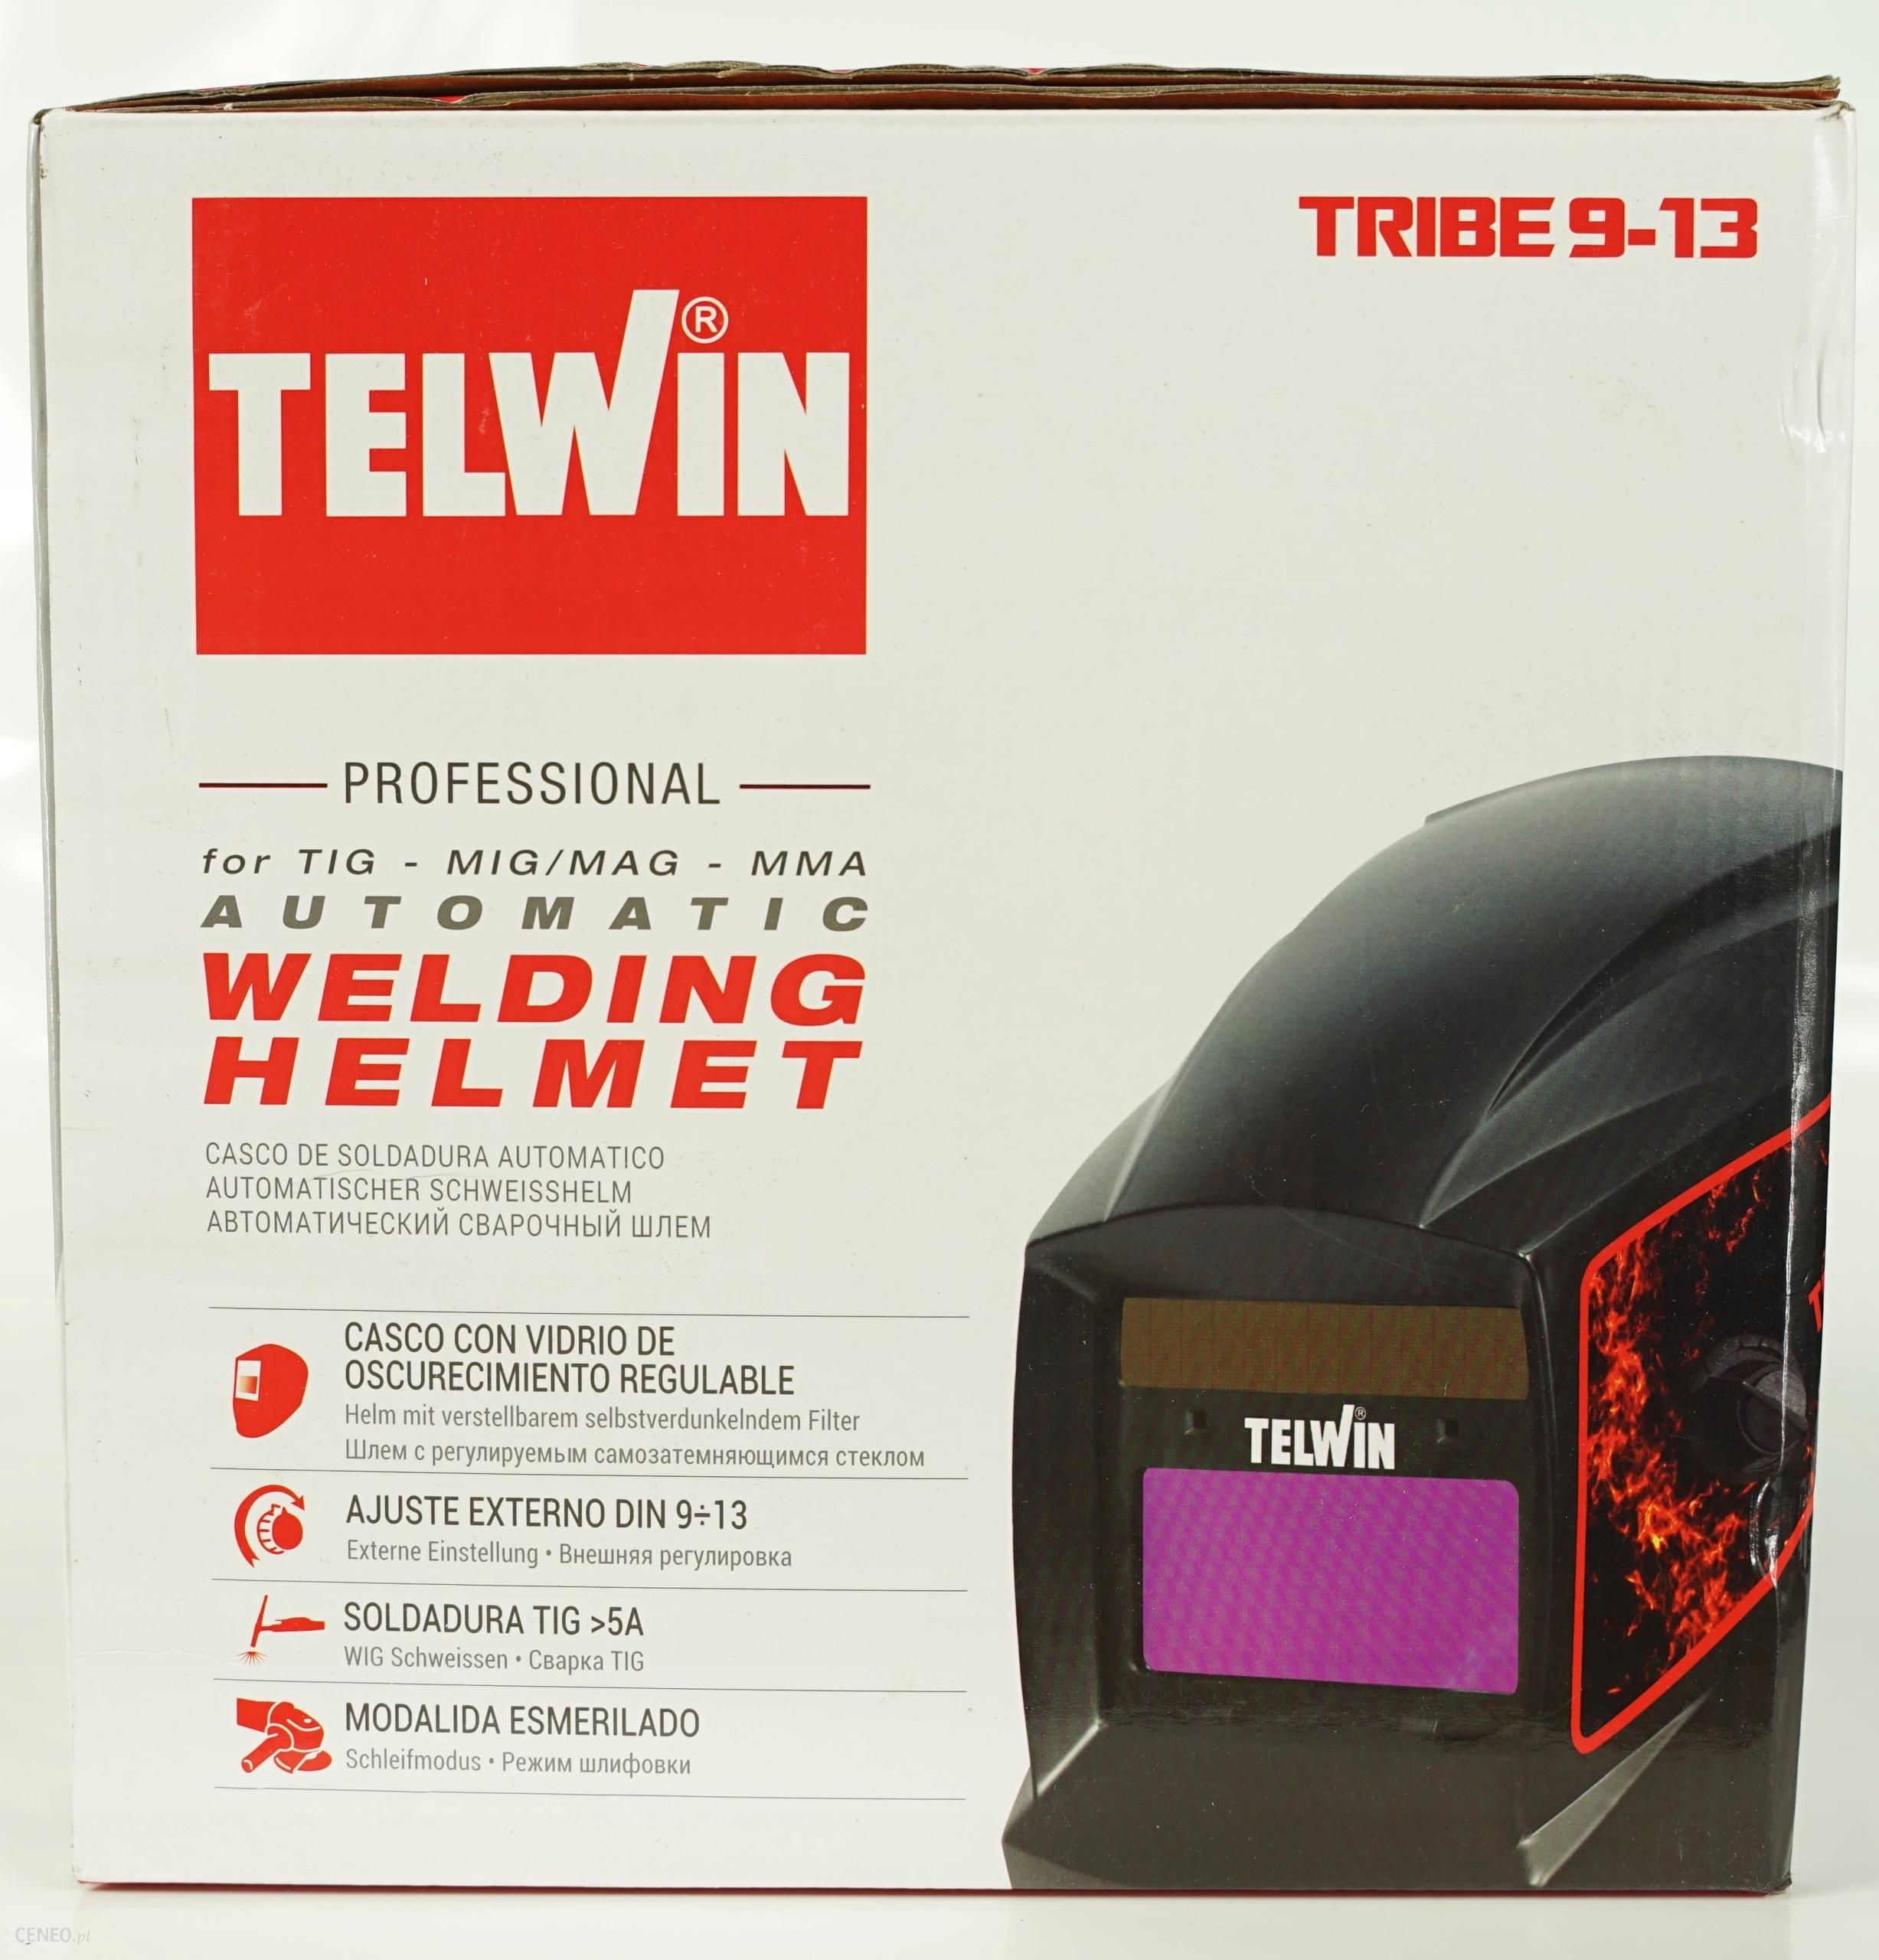 Telwin - Tribe na Spawalniczy Hełm Opinie 9-13 ceny i Automatyczny